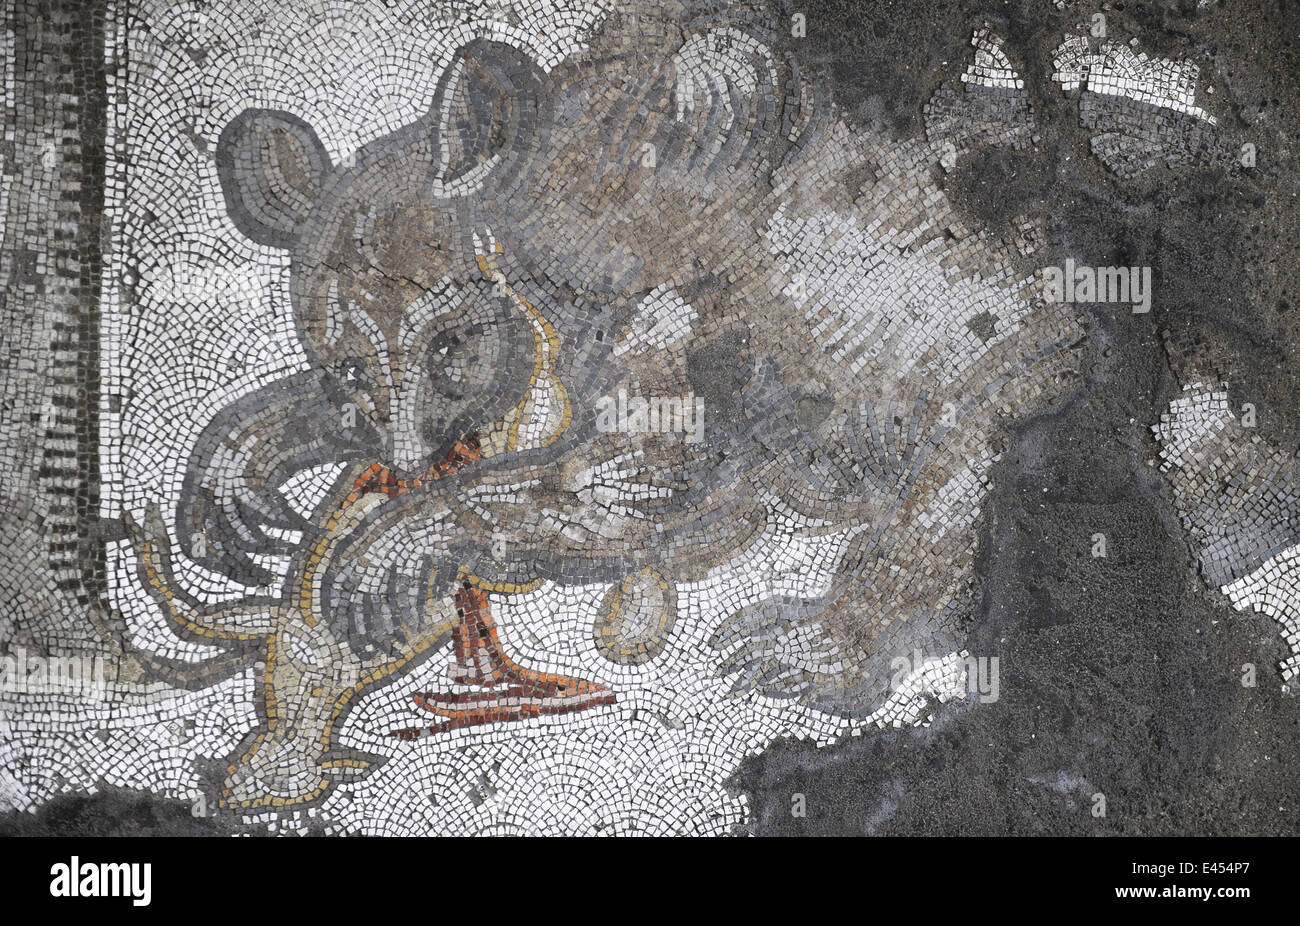 Großer Palast Mosaik-Museum. 4.-6. Jahrhunderte. Detail eines Mosaiks Darstellung eines Bären verschlingt ein Lamm. E. Istanbul-Sektor. Turkei. Stockfoto